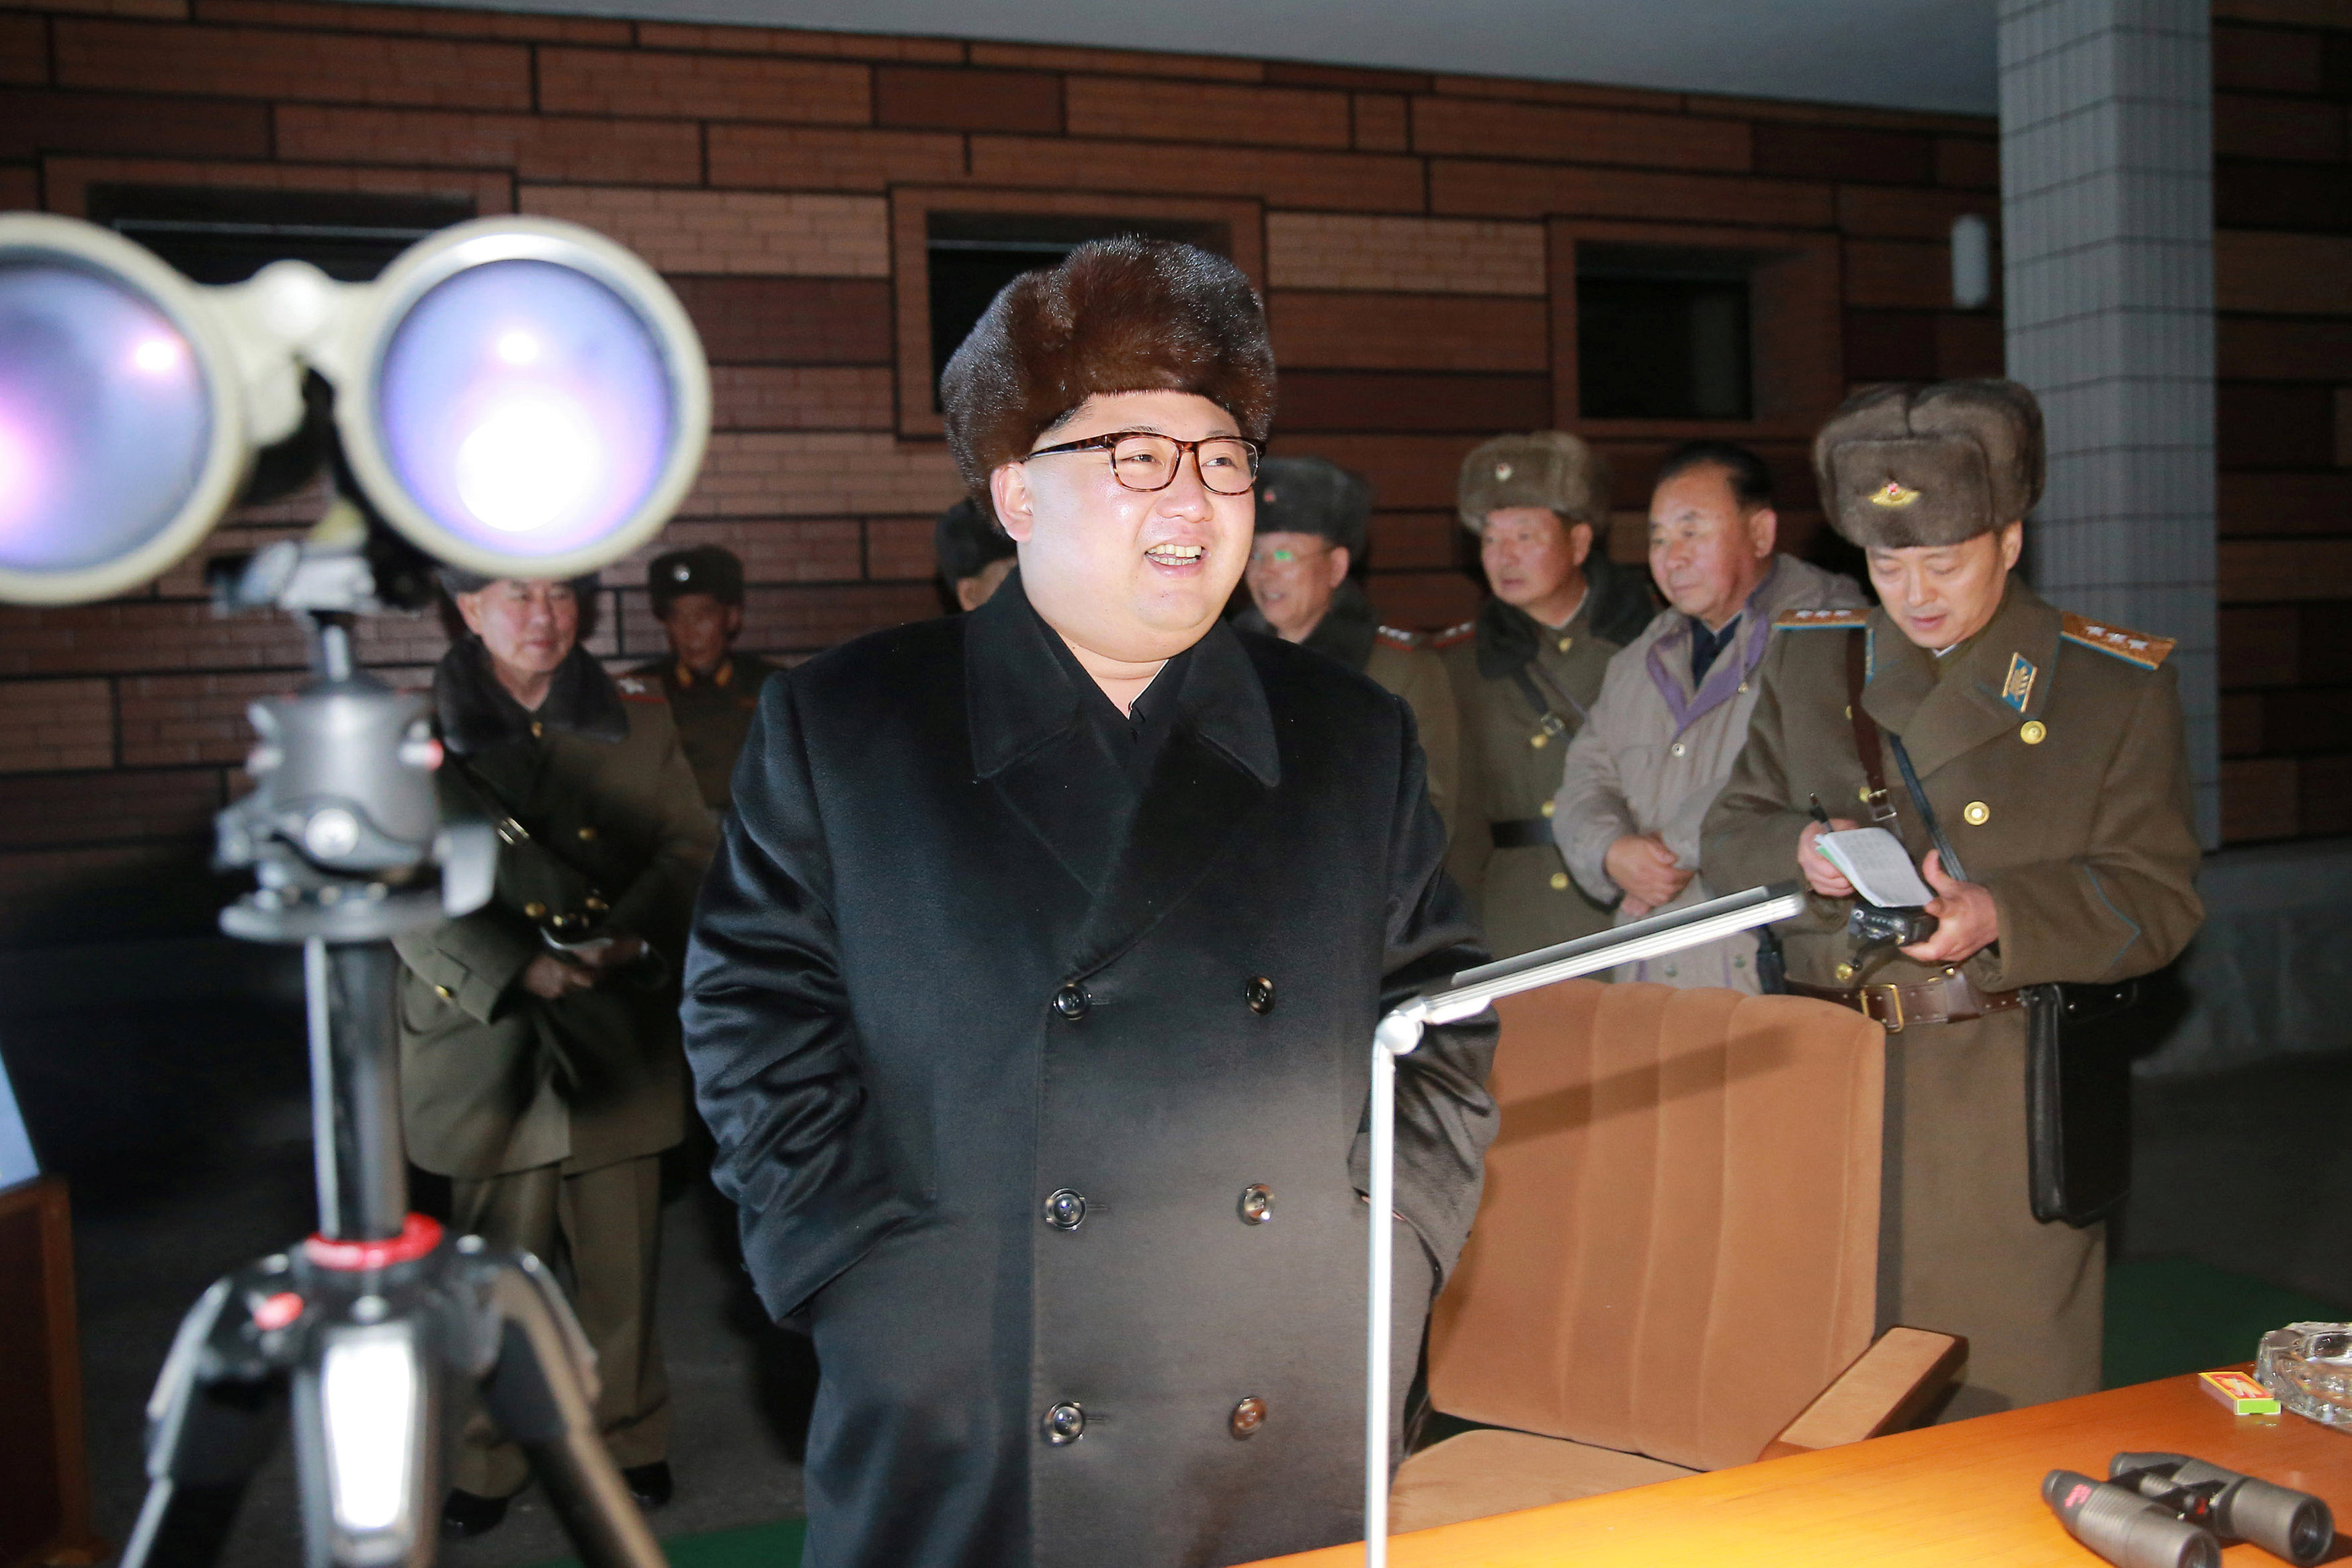 زعيم كوريا الشمالية يشهد مسابقة لإطلاق صواريخ وتدريبات لسلاح الطيران